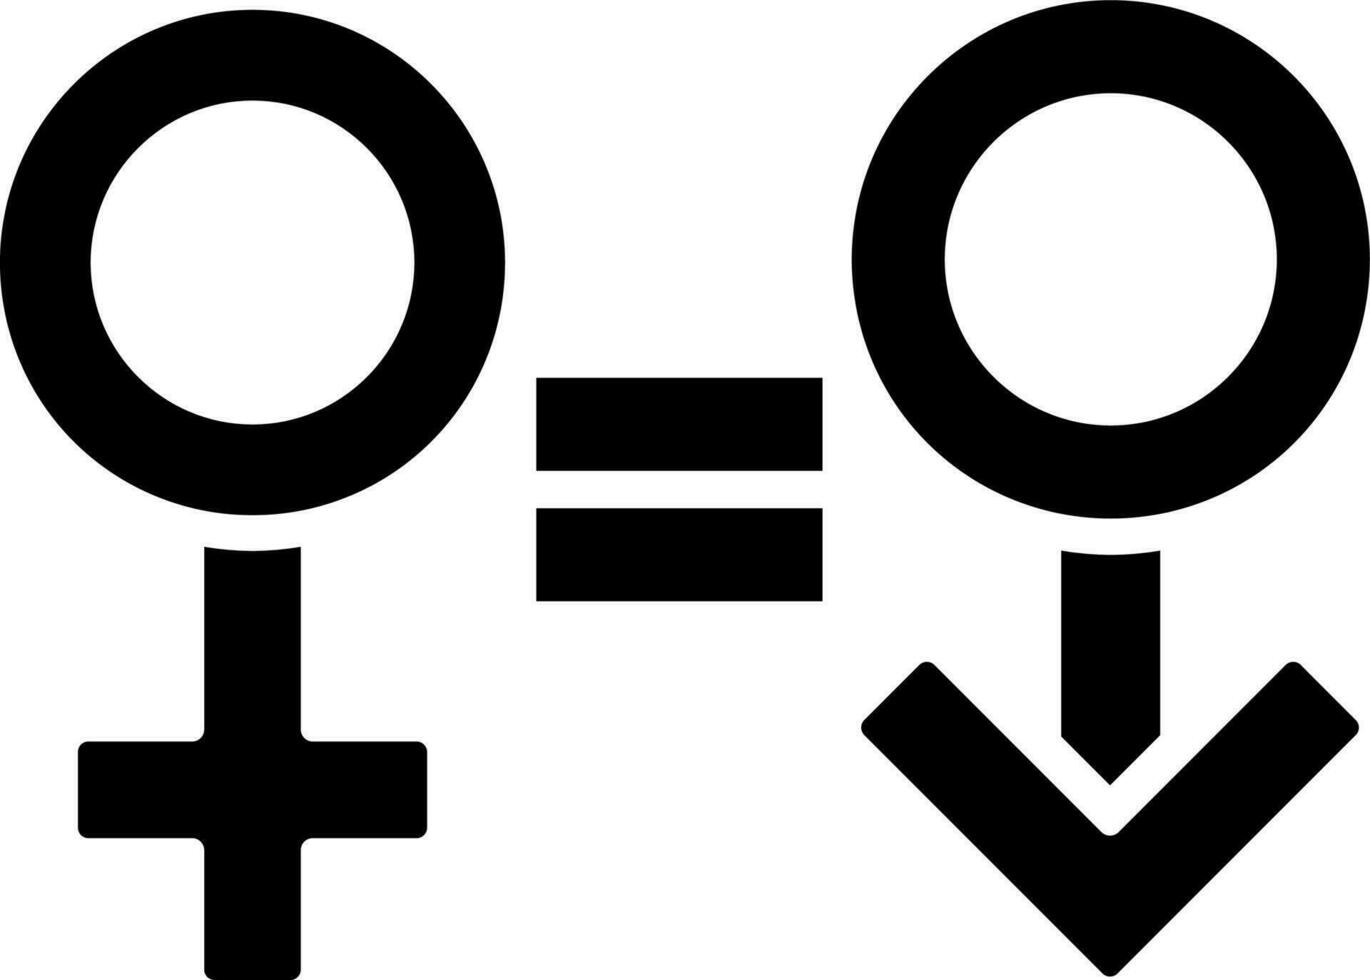 vektor illustration av likvärdig manlig och kvinna ikon.